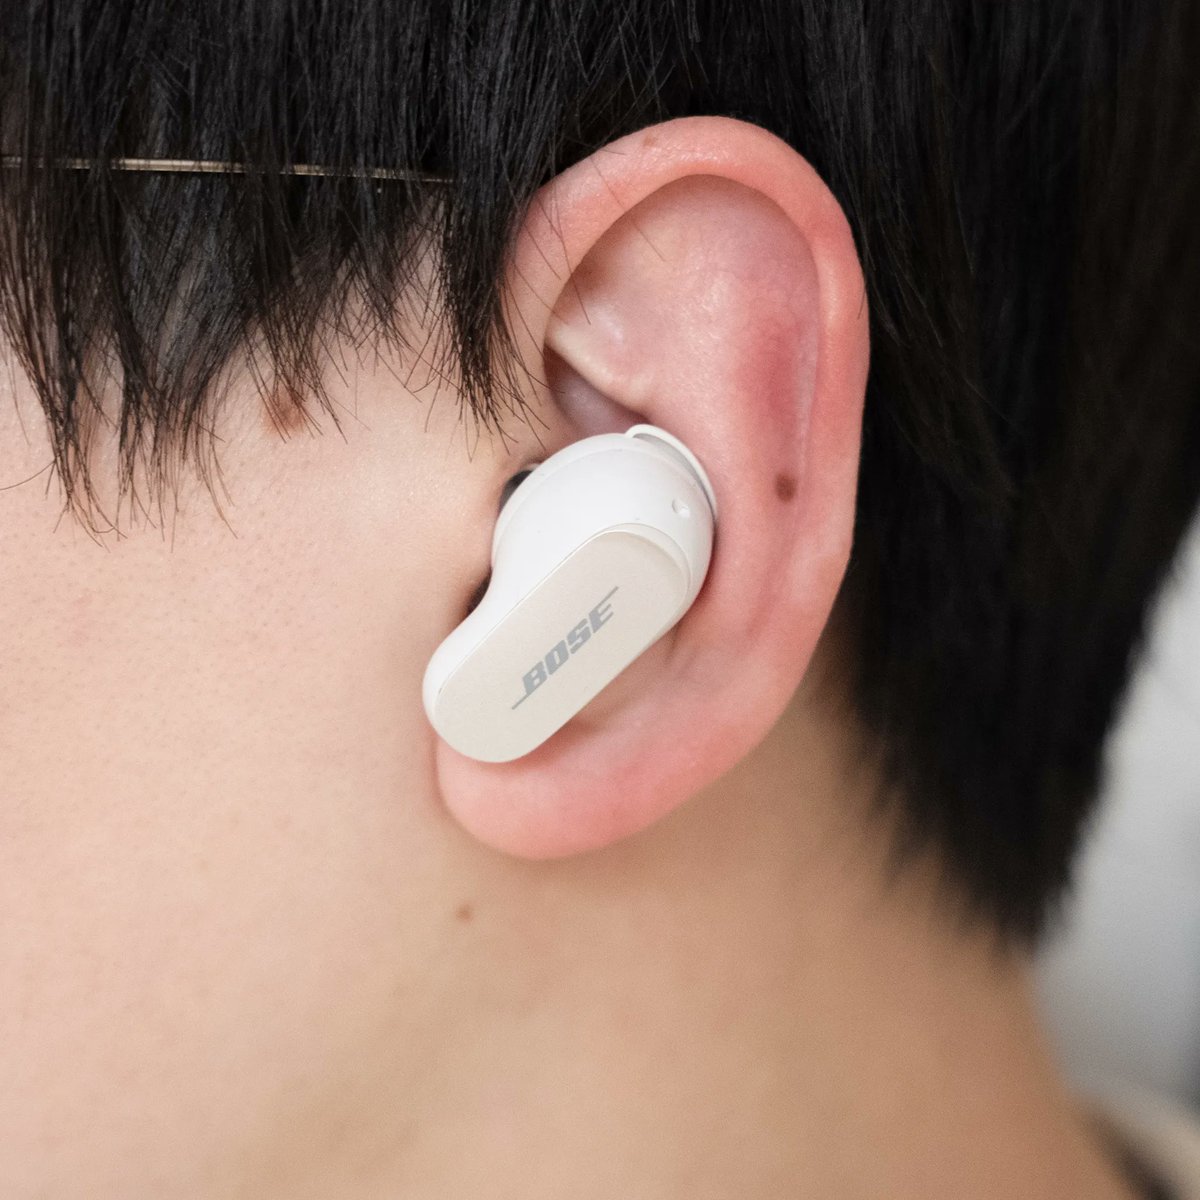 「これぞ"最高峰"!BOSEのイヤホン「QuietComfort Earbuds 」|BuzzFeed Japanのイラスト